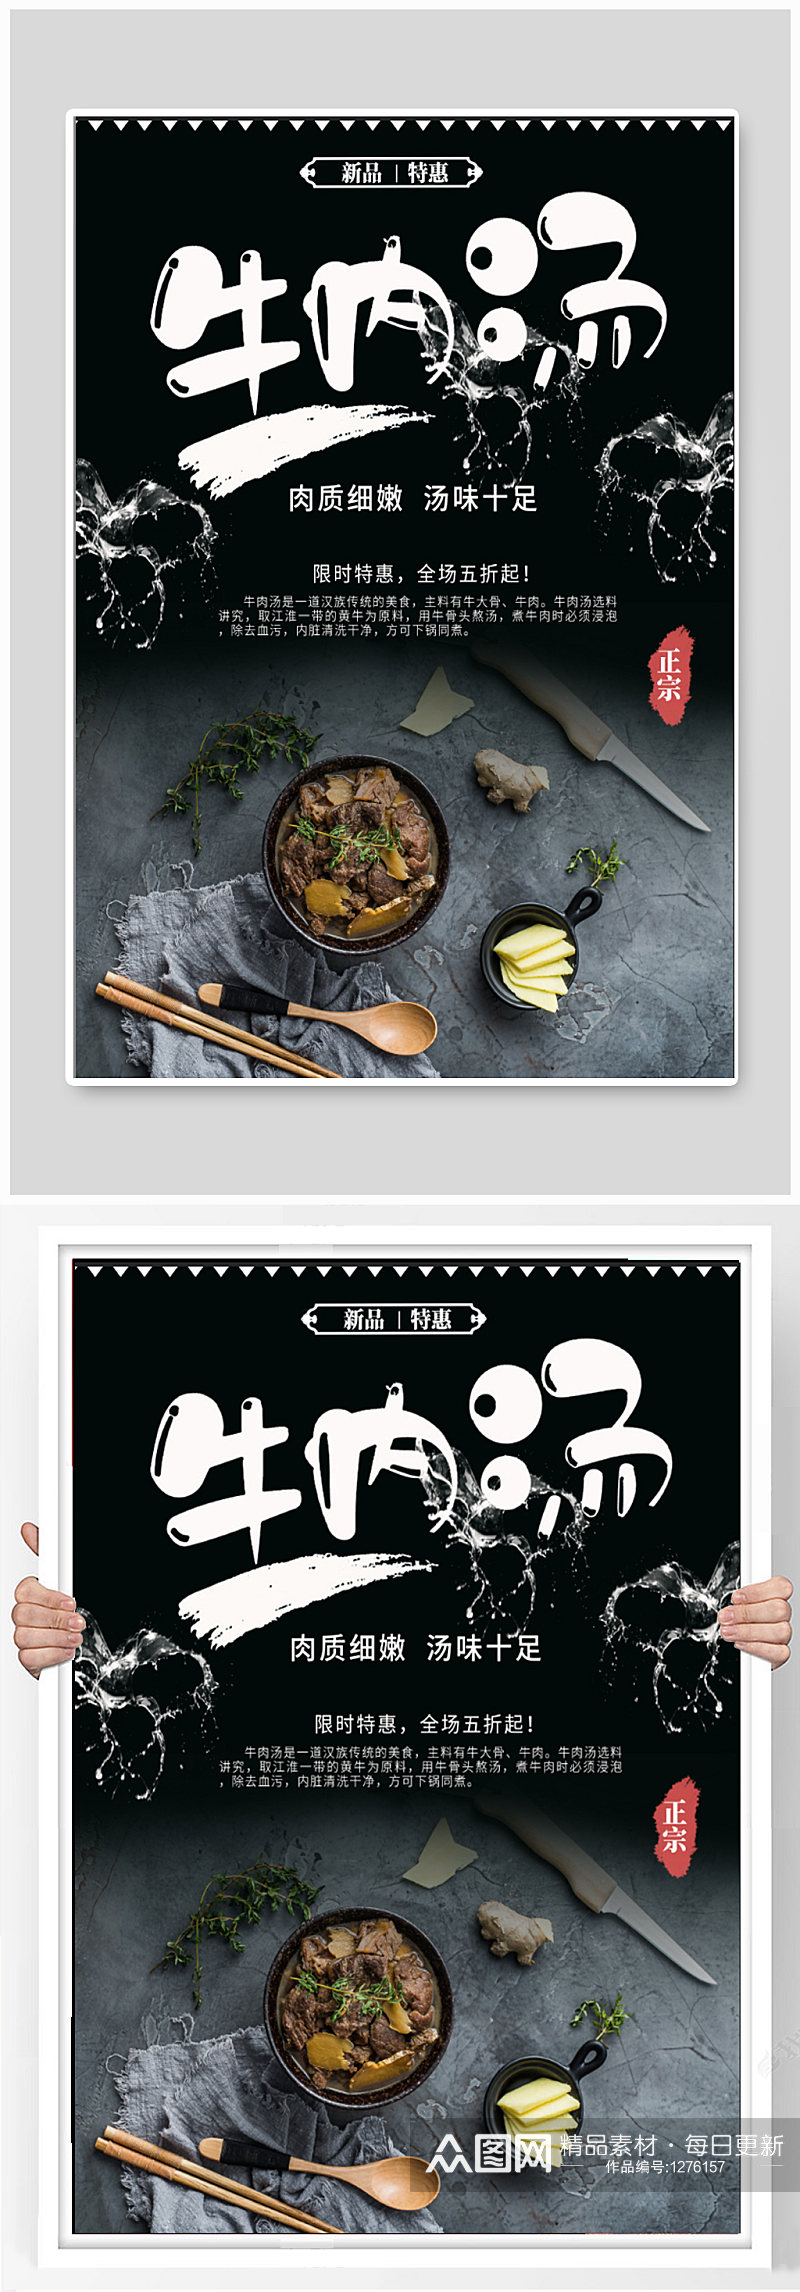 牛肉汤饭店宣传海报素材